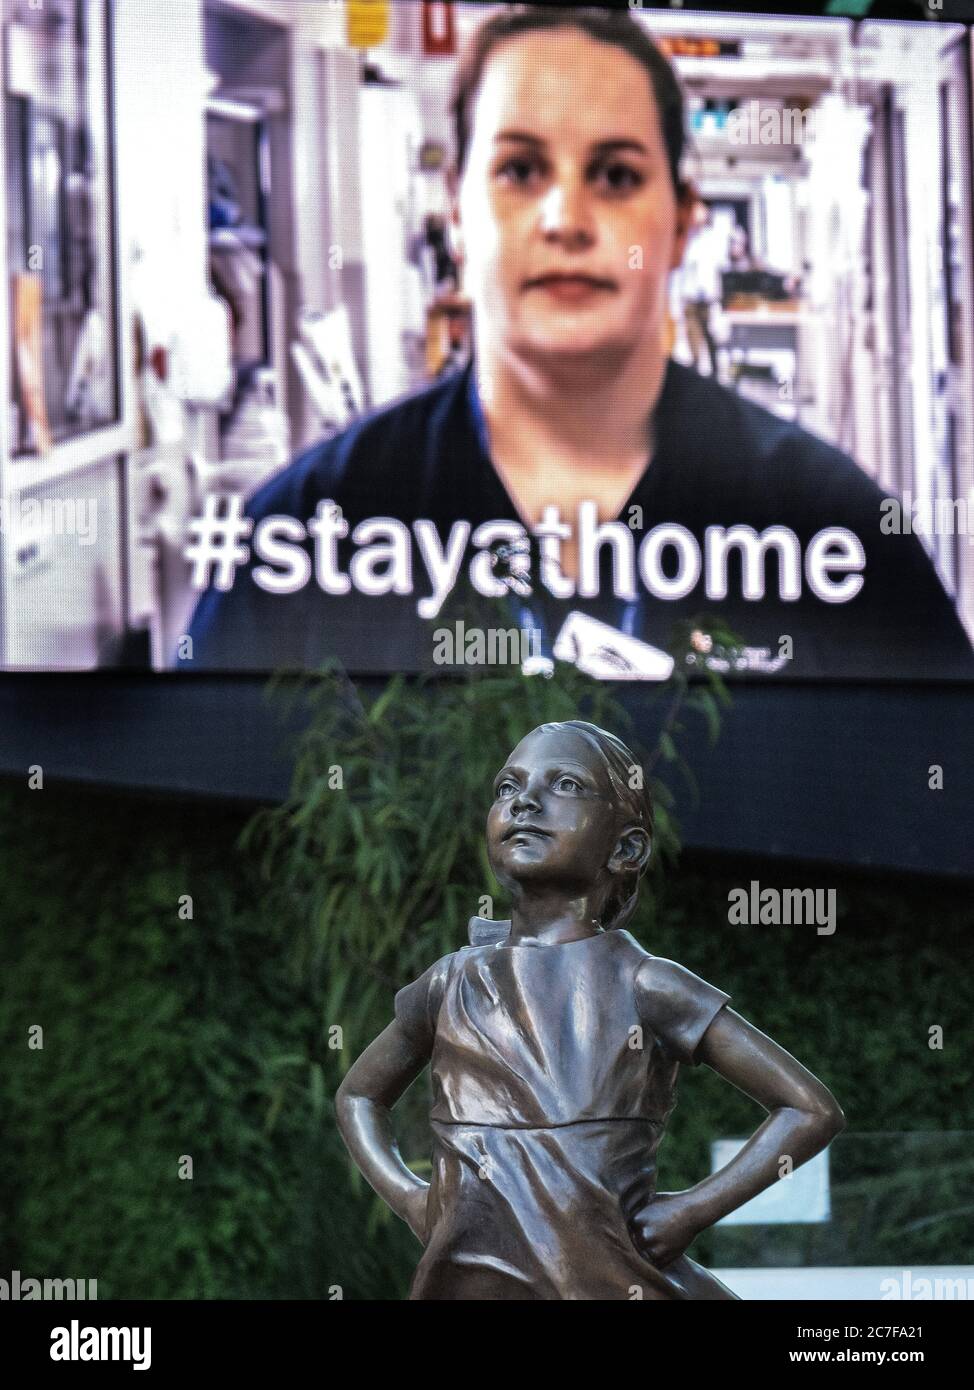 Melbourne Australien Covid-19 Pandemie. Fearless Girl Statue steht vor elektronischen Plakatwand Werbung #stayathome Kampagne in Federation Square. Stockfoto